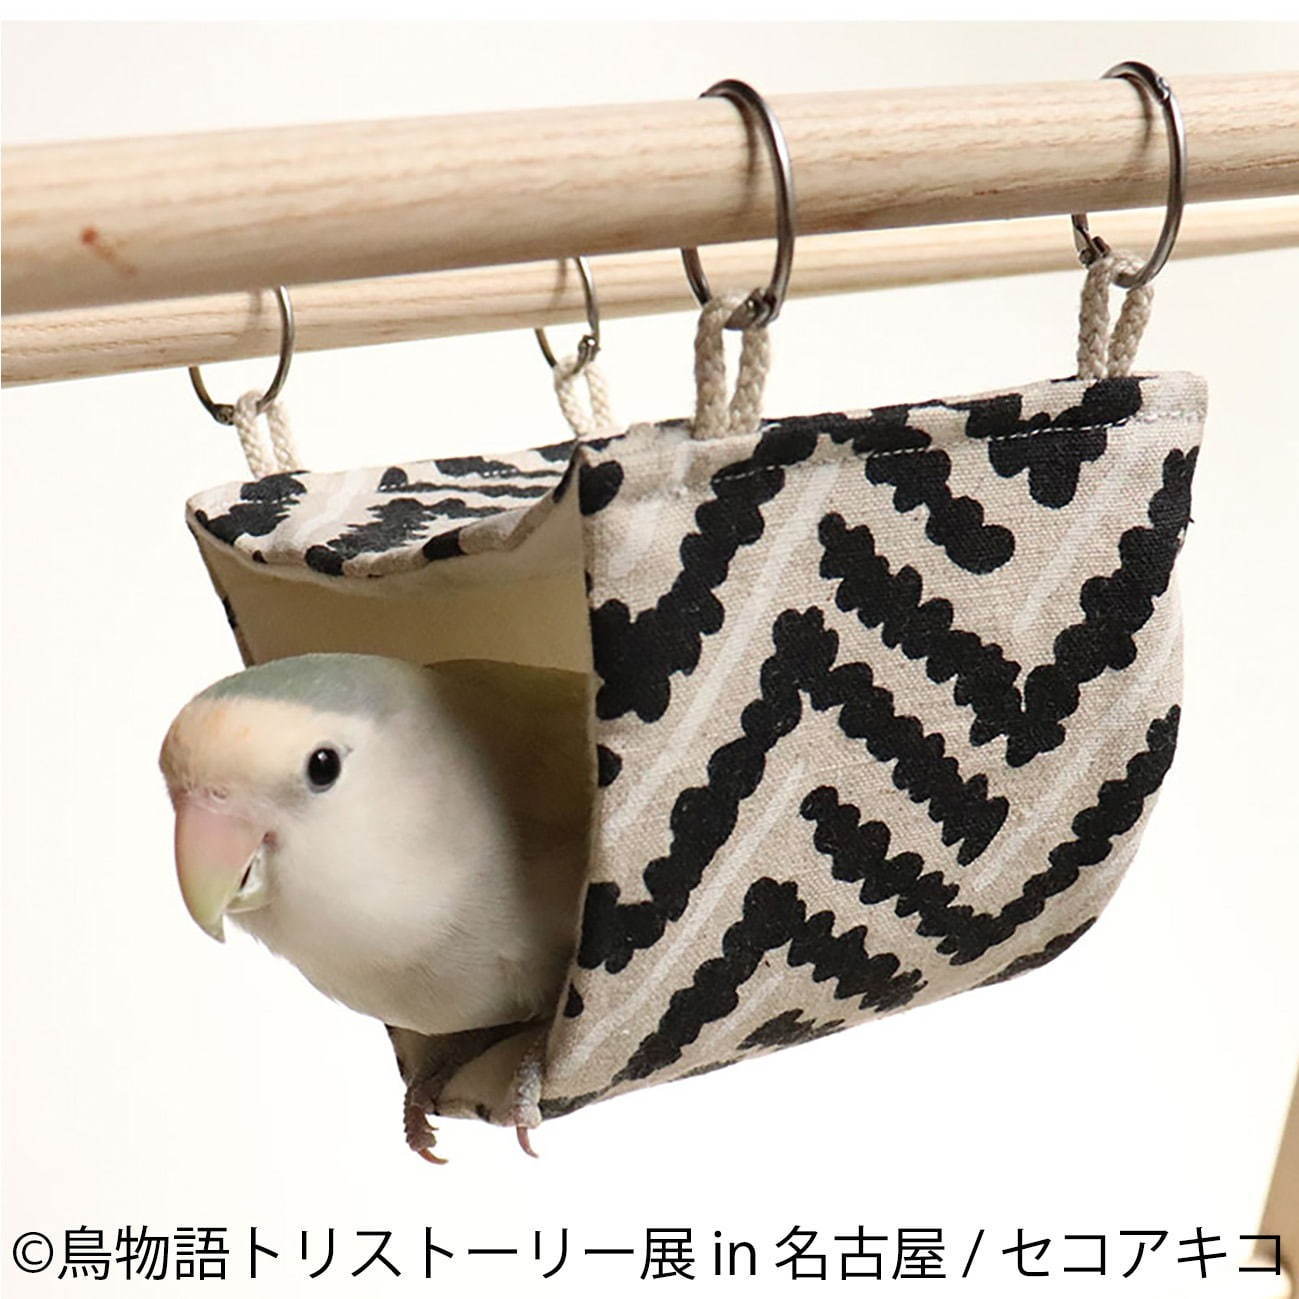 「鳥物語トリストーリー展」名古屋で、鳥の“一瞬の美しさ”を表した写真展＆ハンドメイドグッズ物販｜写真19